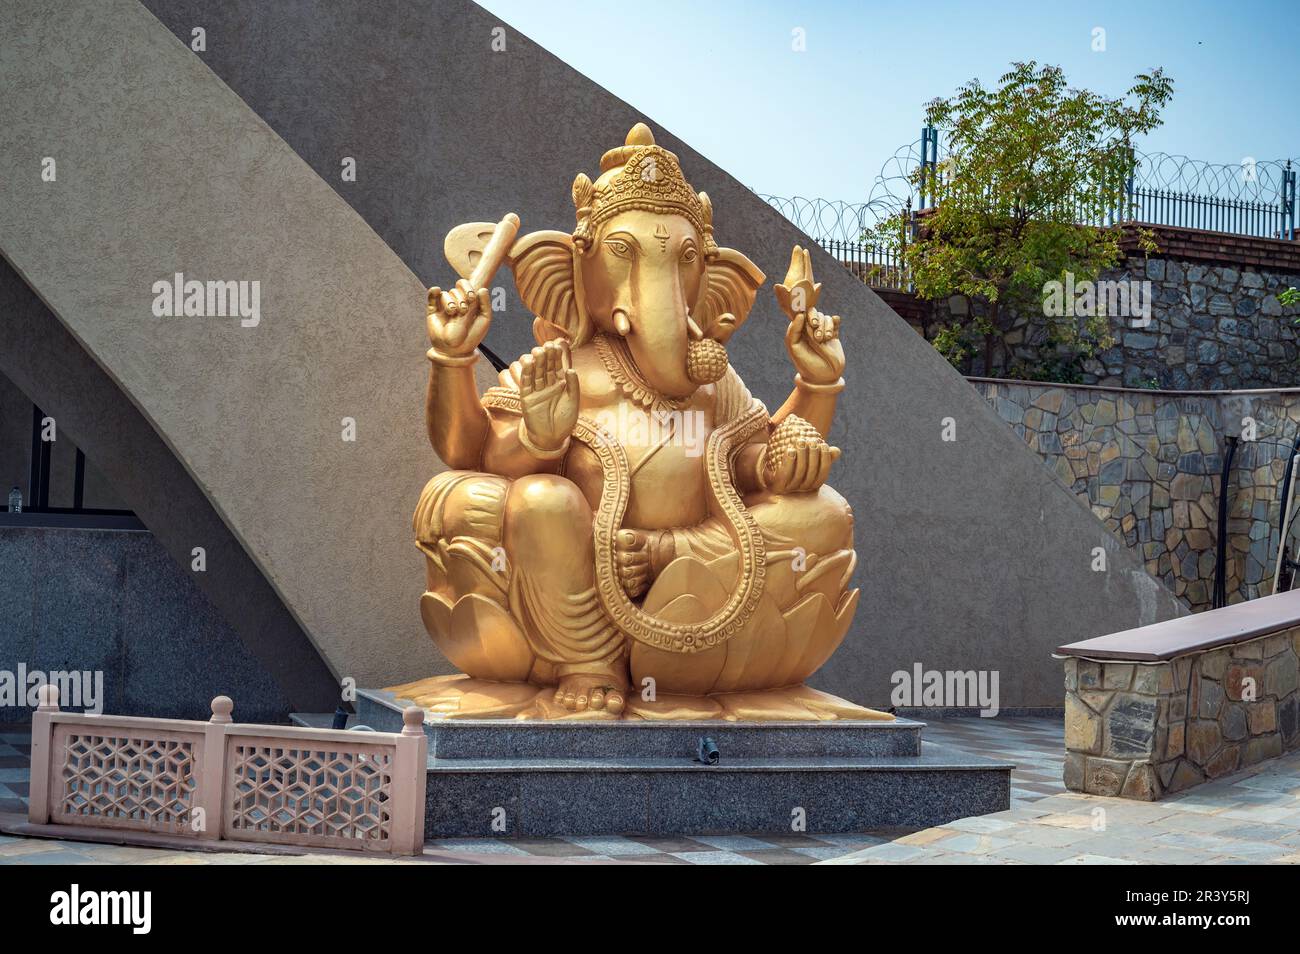 La statue de la croyance est une statue du Dieu hindou Shiva construite à Nathdwara au Rajasthan, en Inde. Banque D'Images